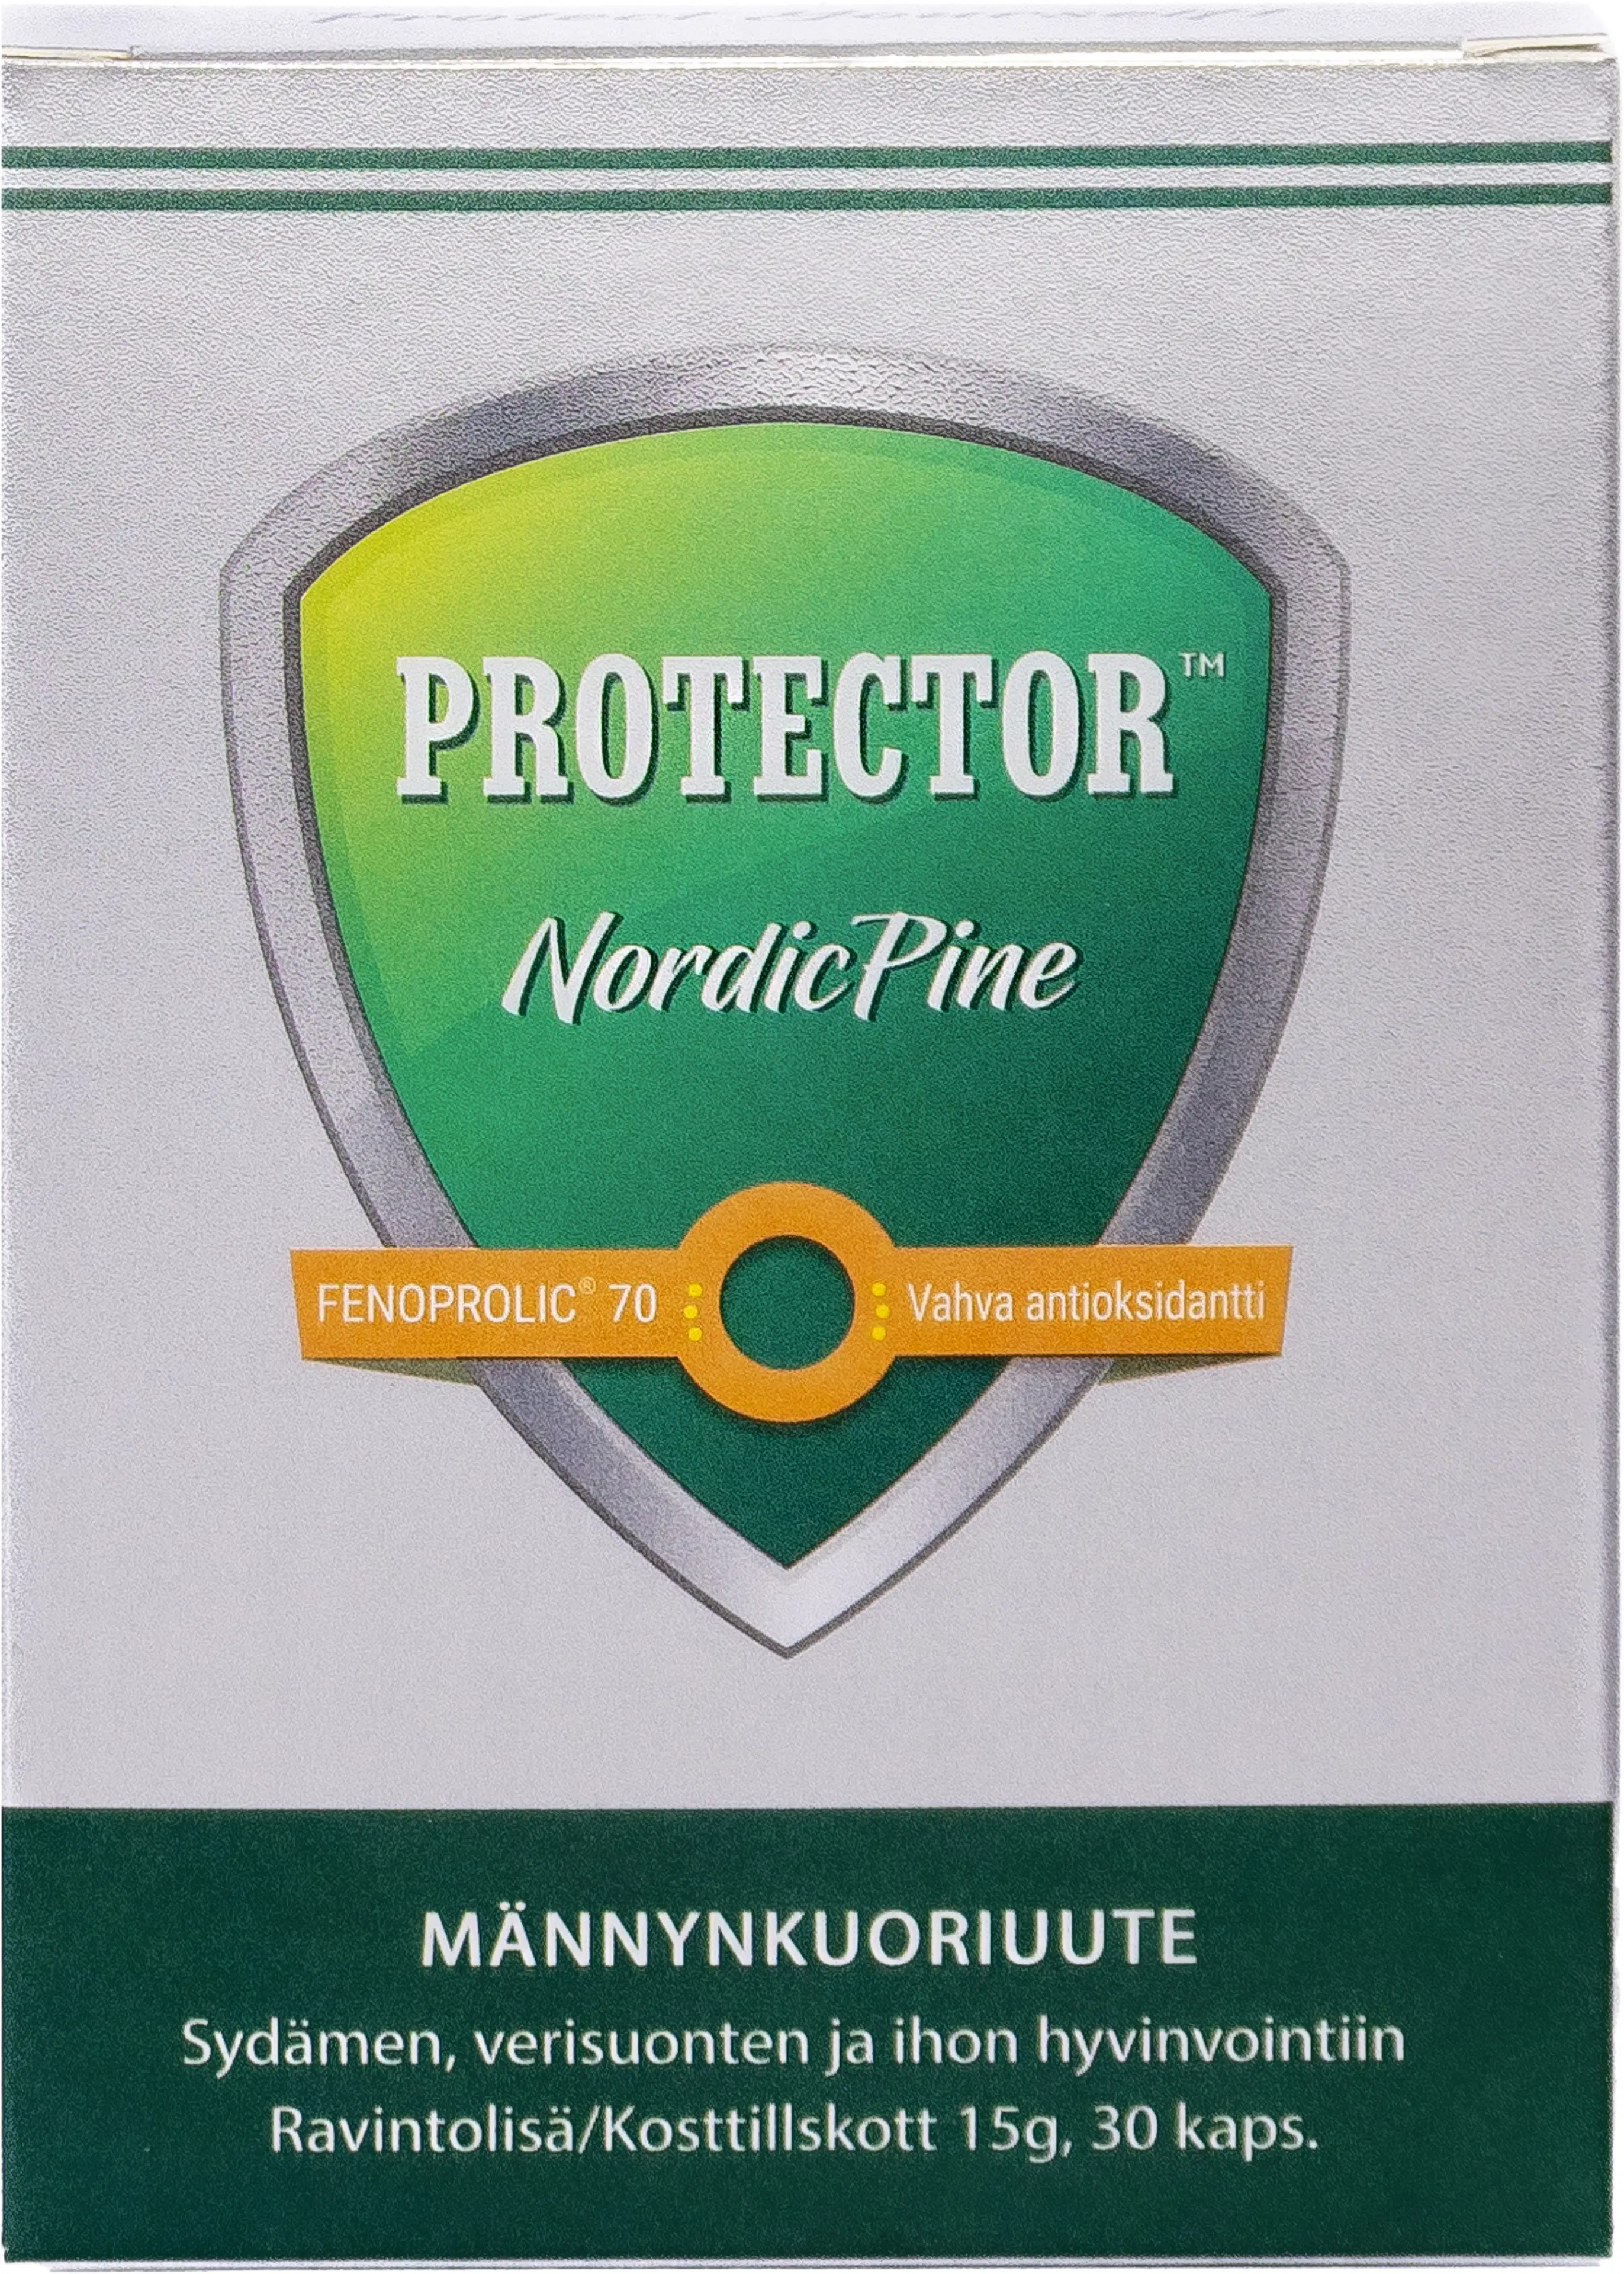 Protector™ NordicPine männynkuoriuute 30 kaps.